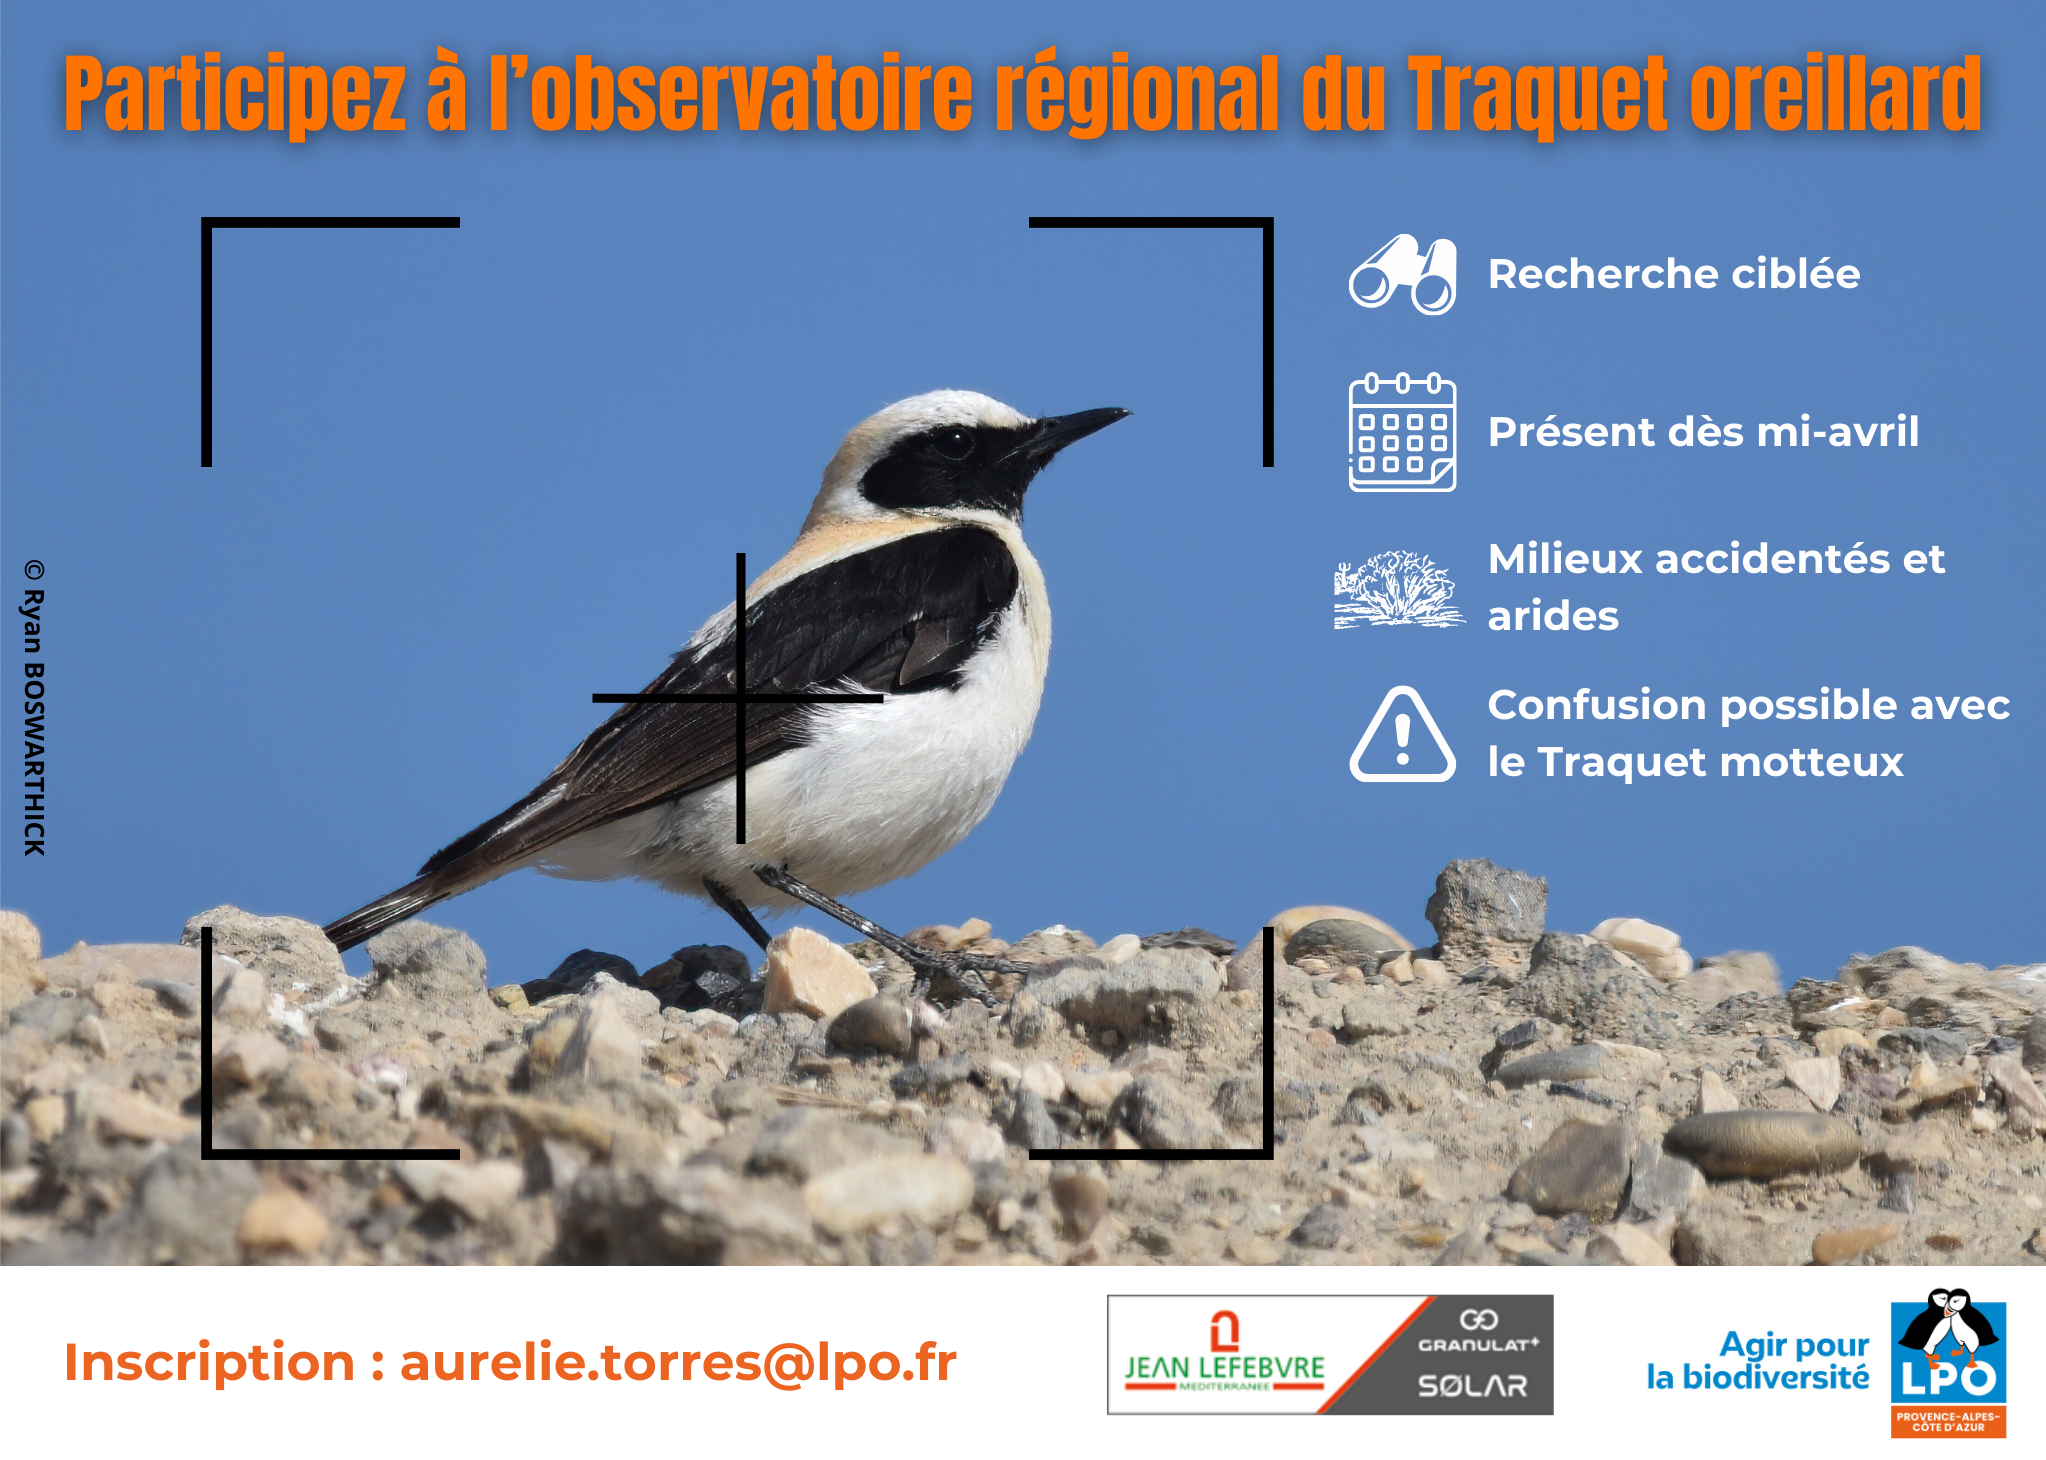 https://cdnfiles1.biolovision.net/www.faune-paca.org/userfiles/MonDossier/Traquetoreillard/ObservatoireTraquetoreillard.png